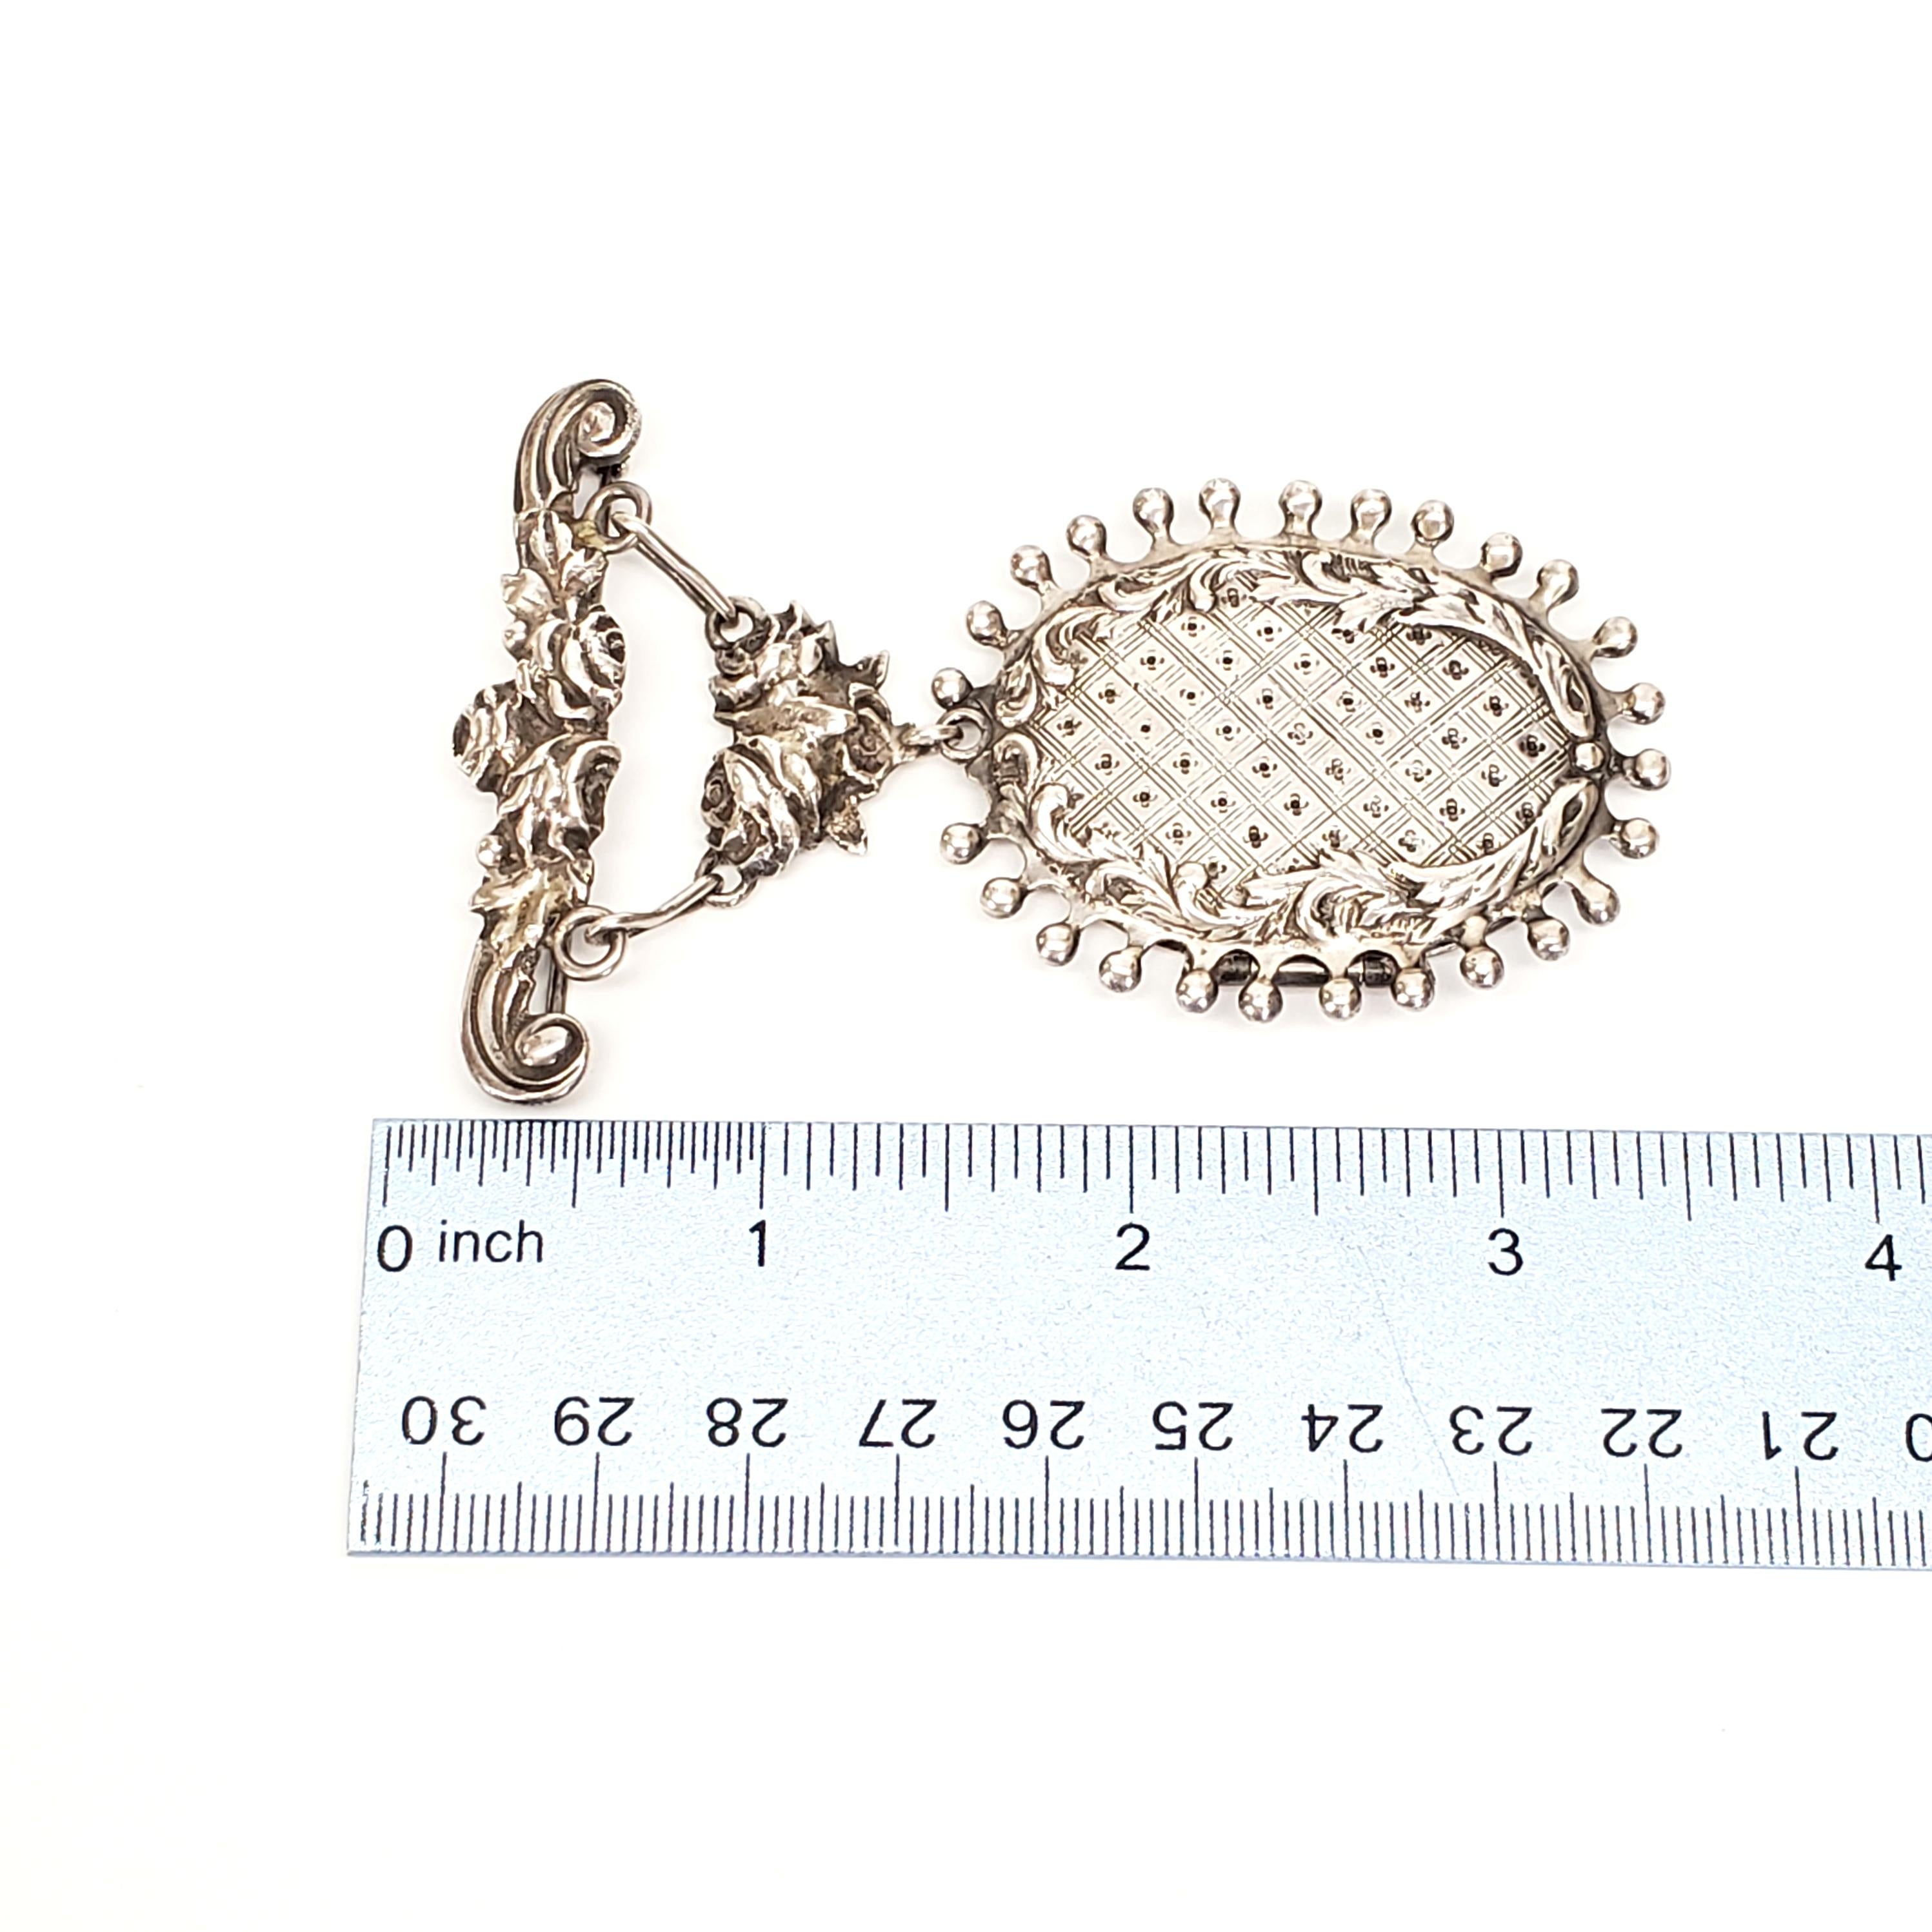 Handmade Sterling Silver Hanging Locket Pin / Brooch 1